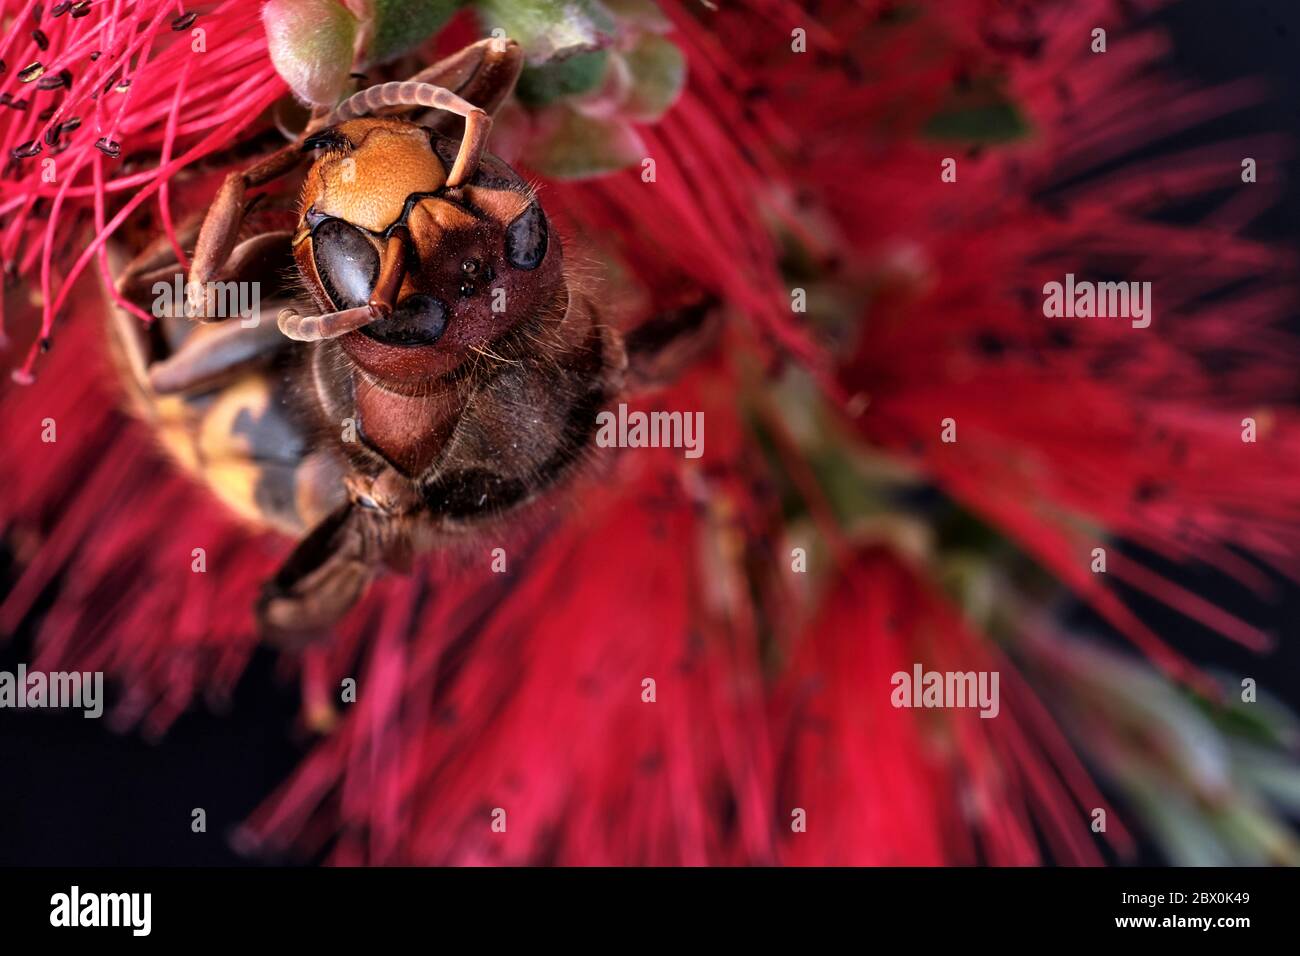 Un hornet asiatique mort sur une fleur commune de botlebrush. C'est une espèce envahissante en Europe et a été surnommée le meurtre Wasp aux États-Unis. Banque D'Images